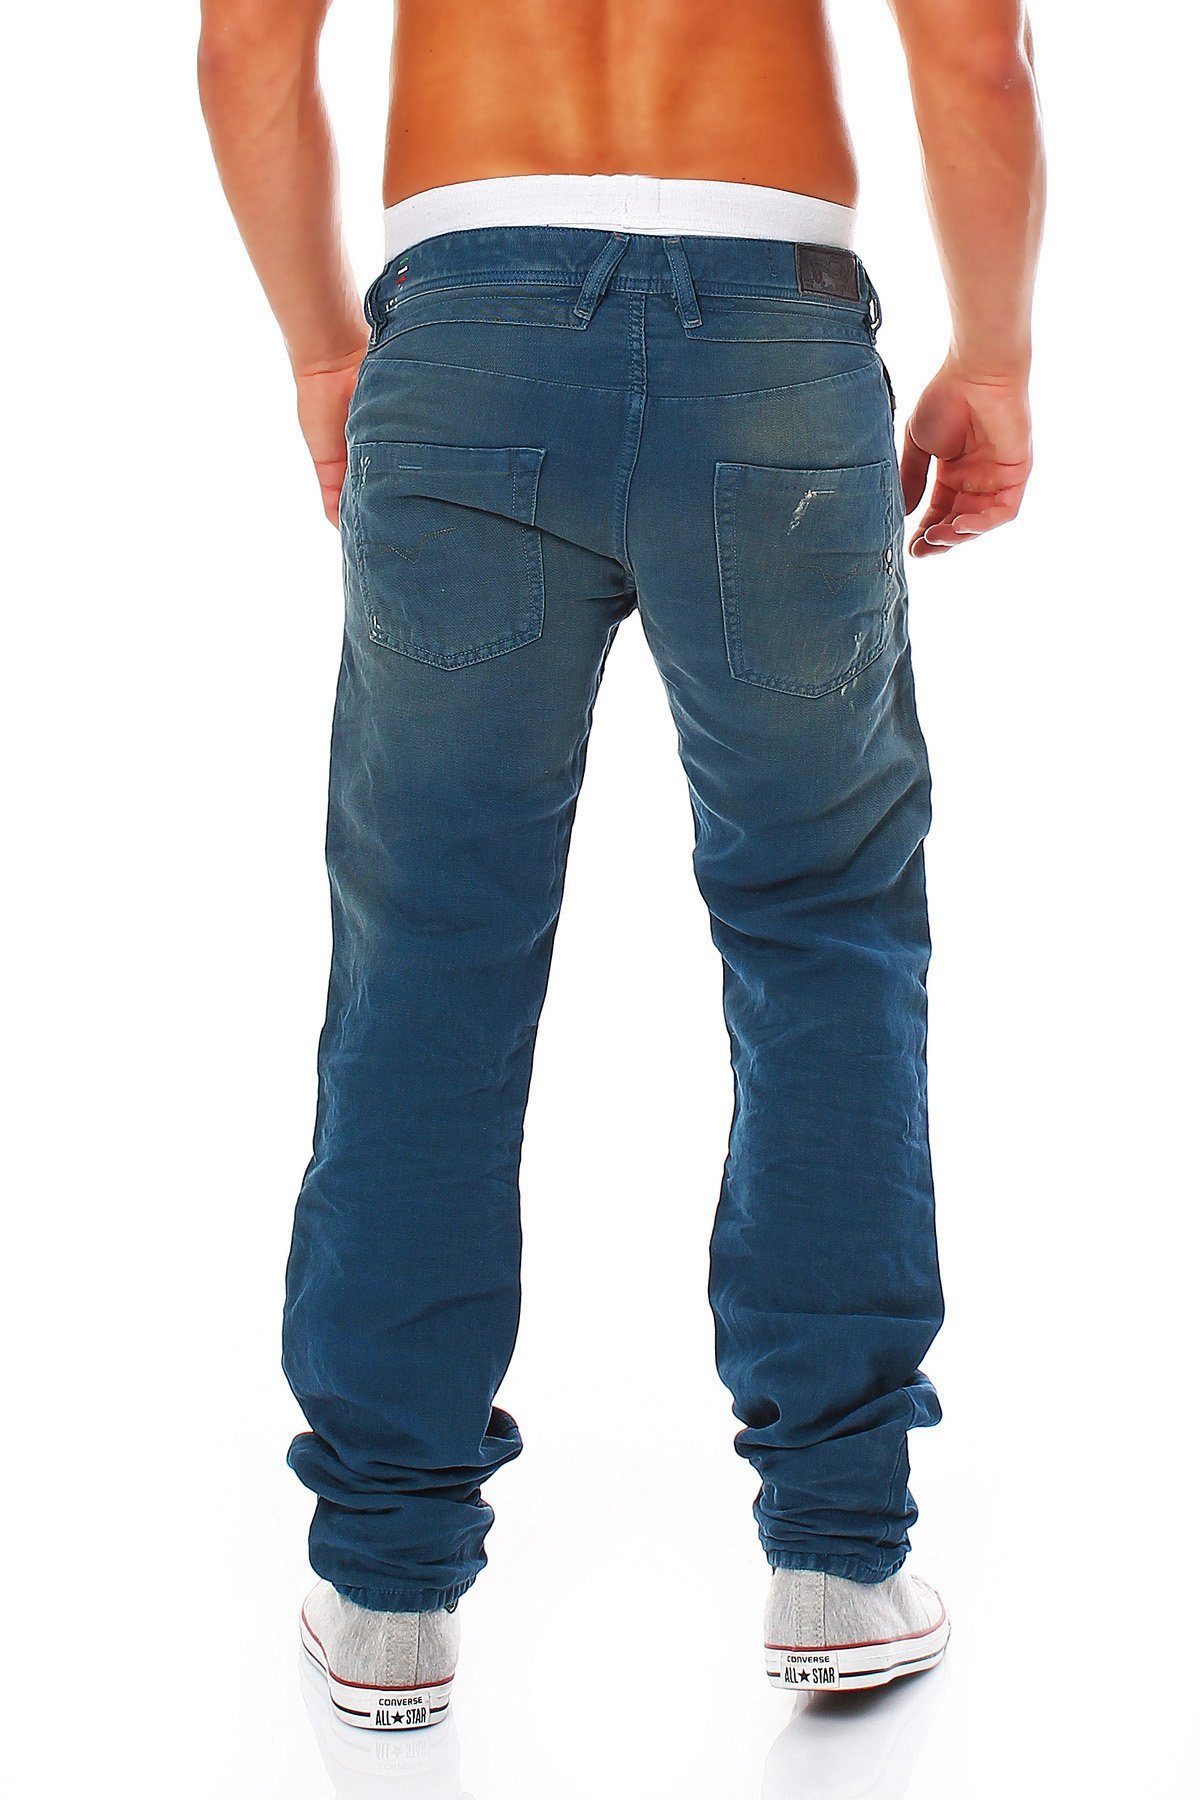 5-Pocket-Style, Diesel L32 0818V Tapered, Röhrenjeans, Belther Blau, Dirty-Used-Look, Herren Regular-fit-Jeans Länge: